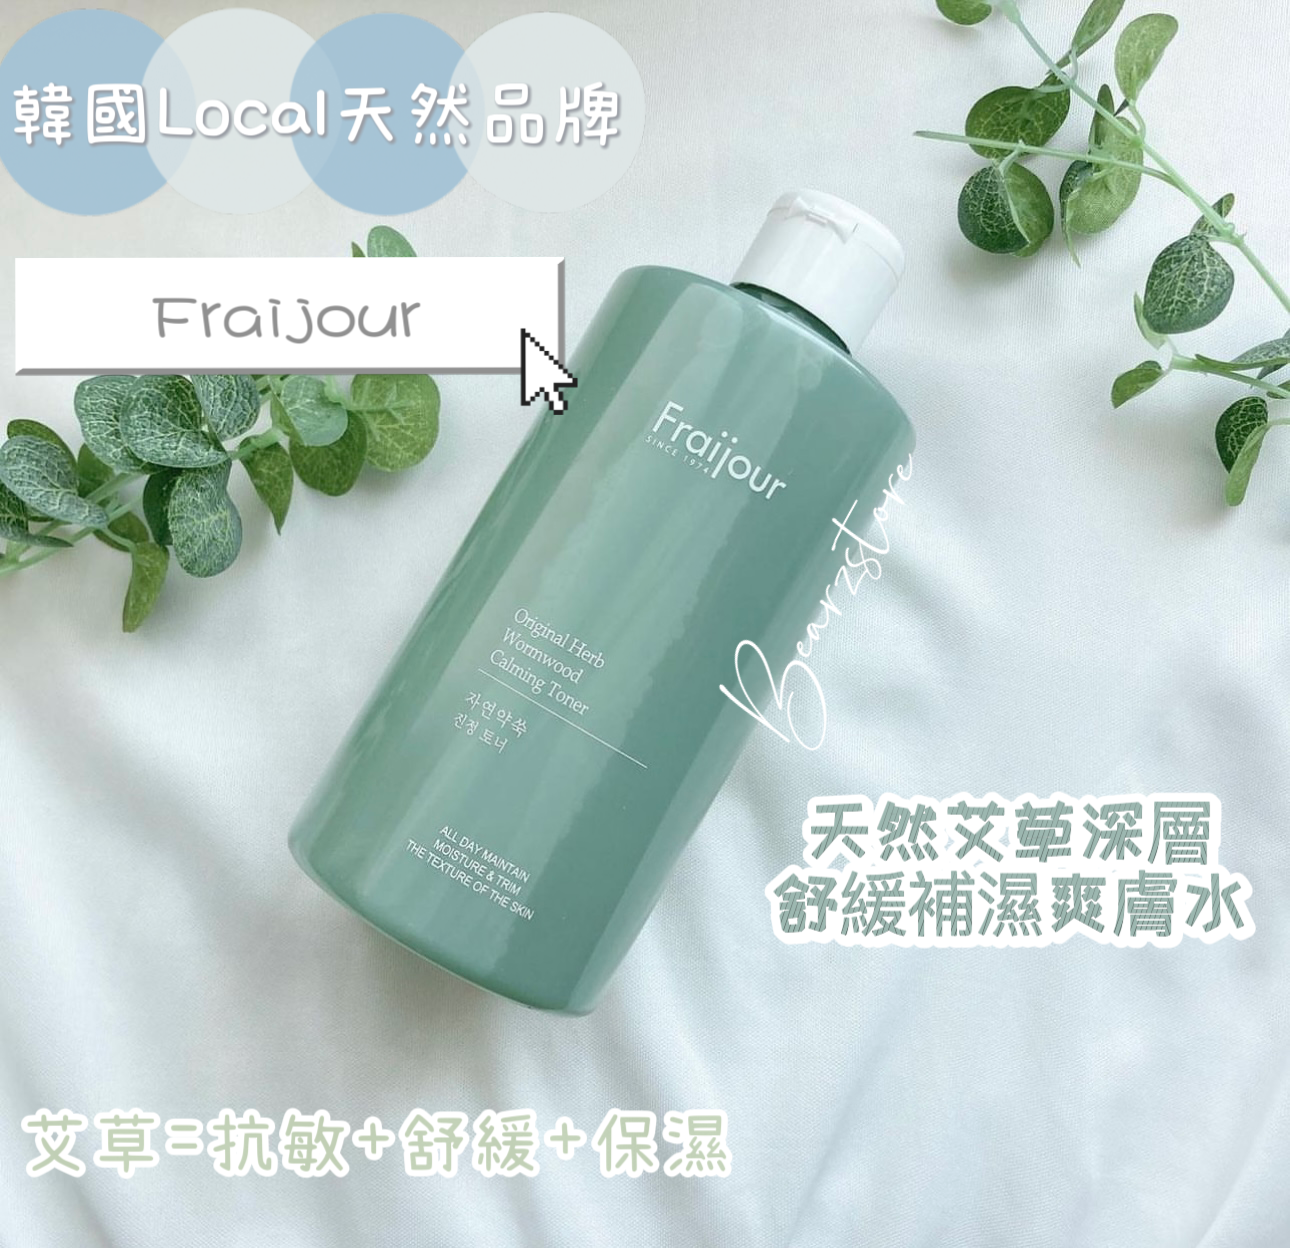 韓國Local天然品牌Fraijour💚 onni話呢個Brand好出名 價錢又好親民 🇰🇷 | 天然艾草深層舒緩補濕爽膚水🌿